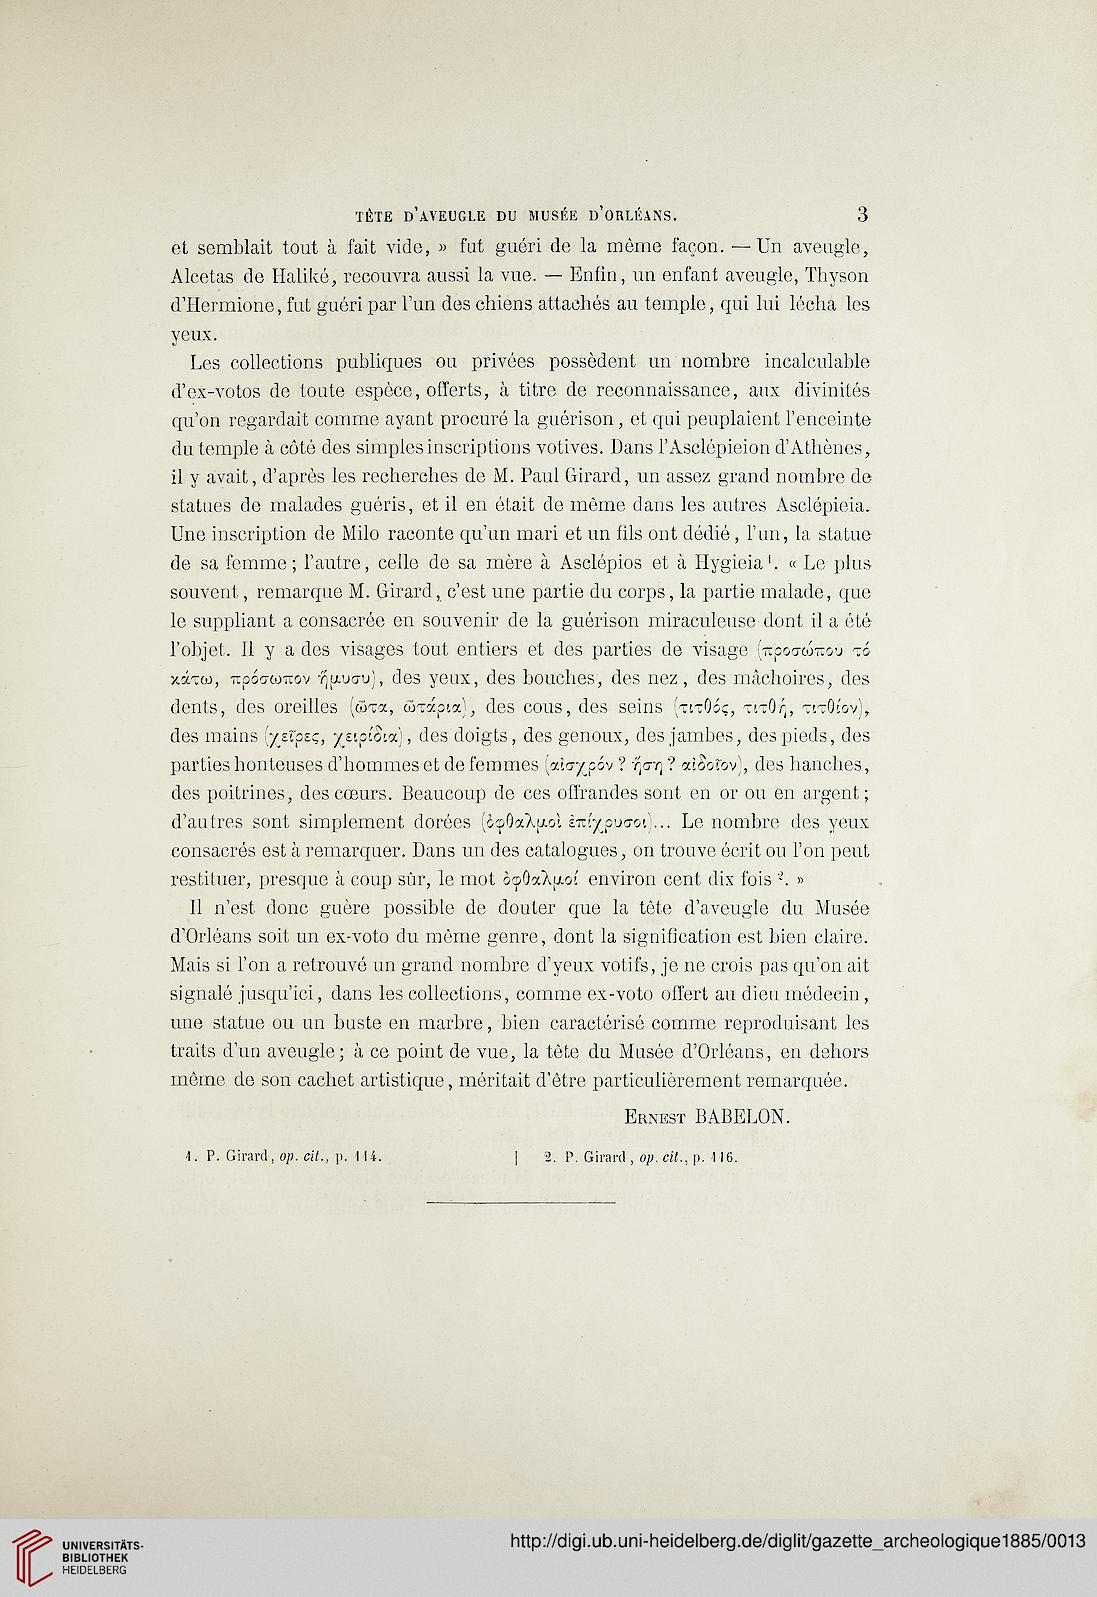 gazette archeologique revue des musees nationaux 10 1885